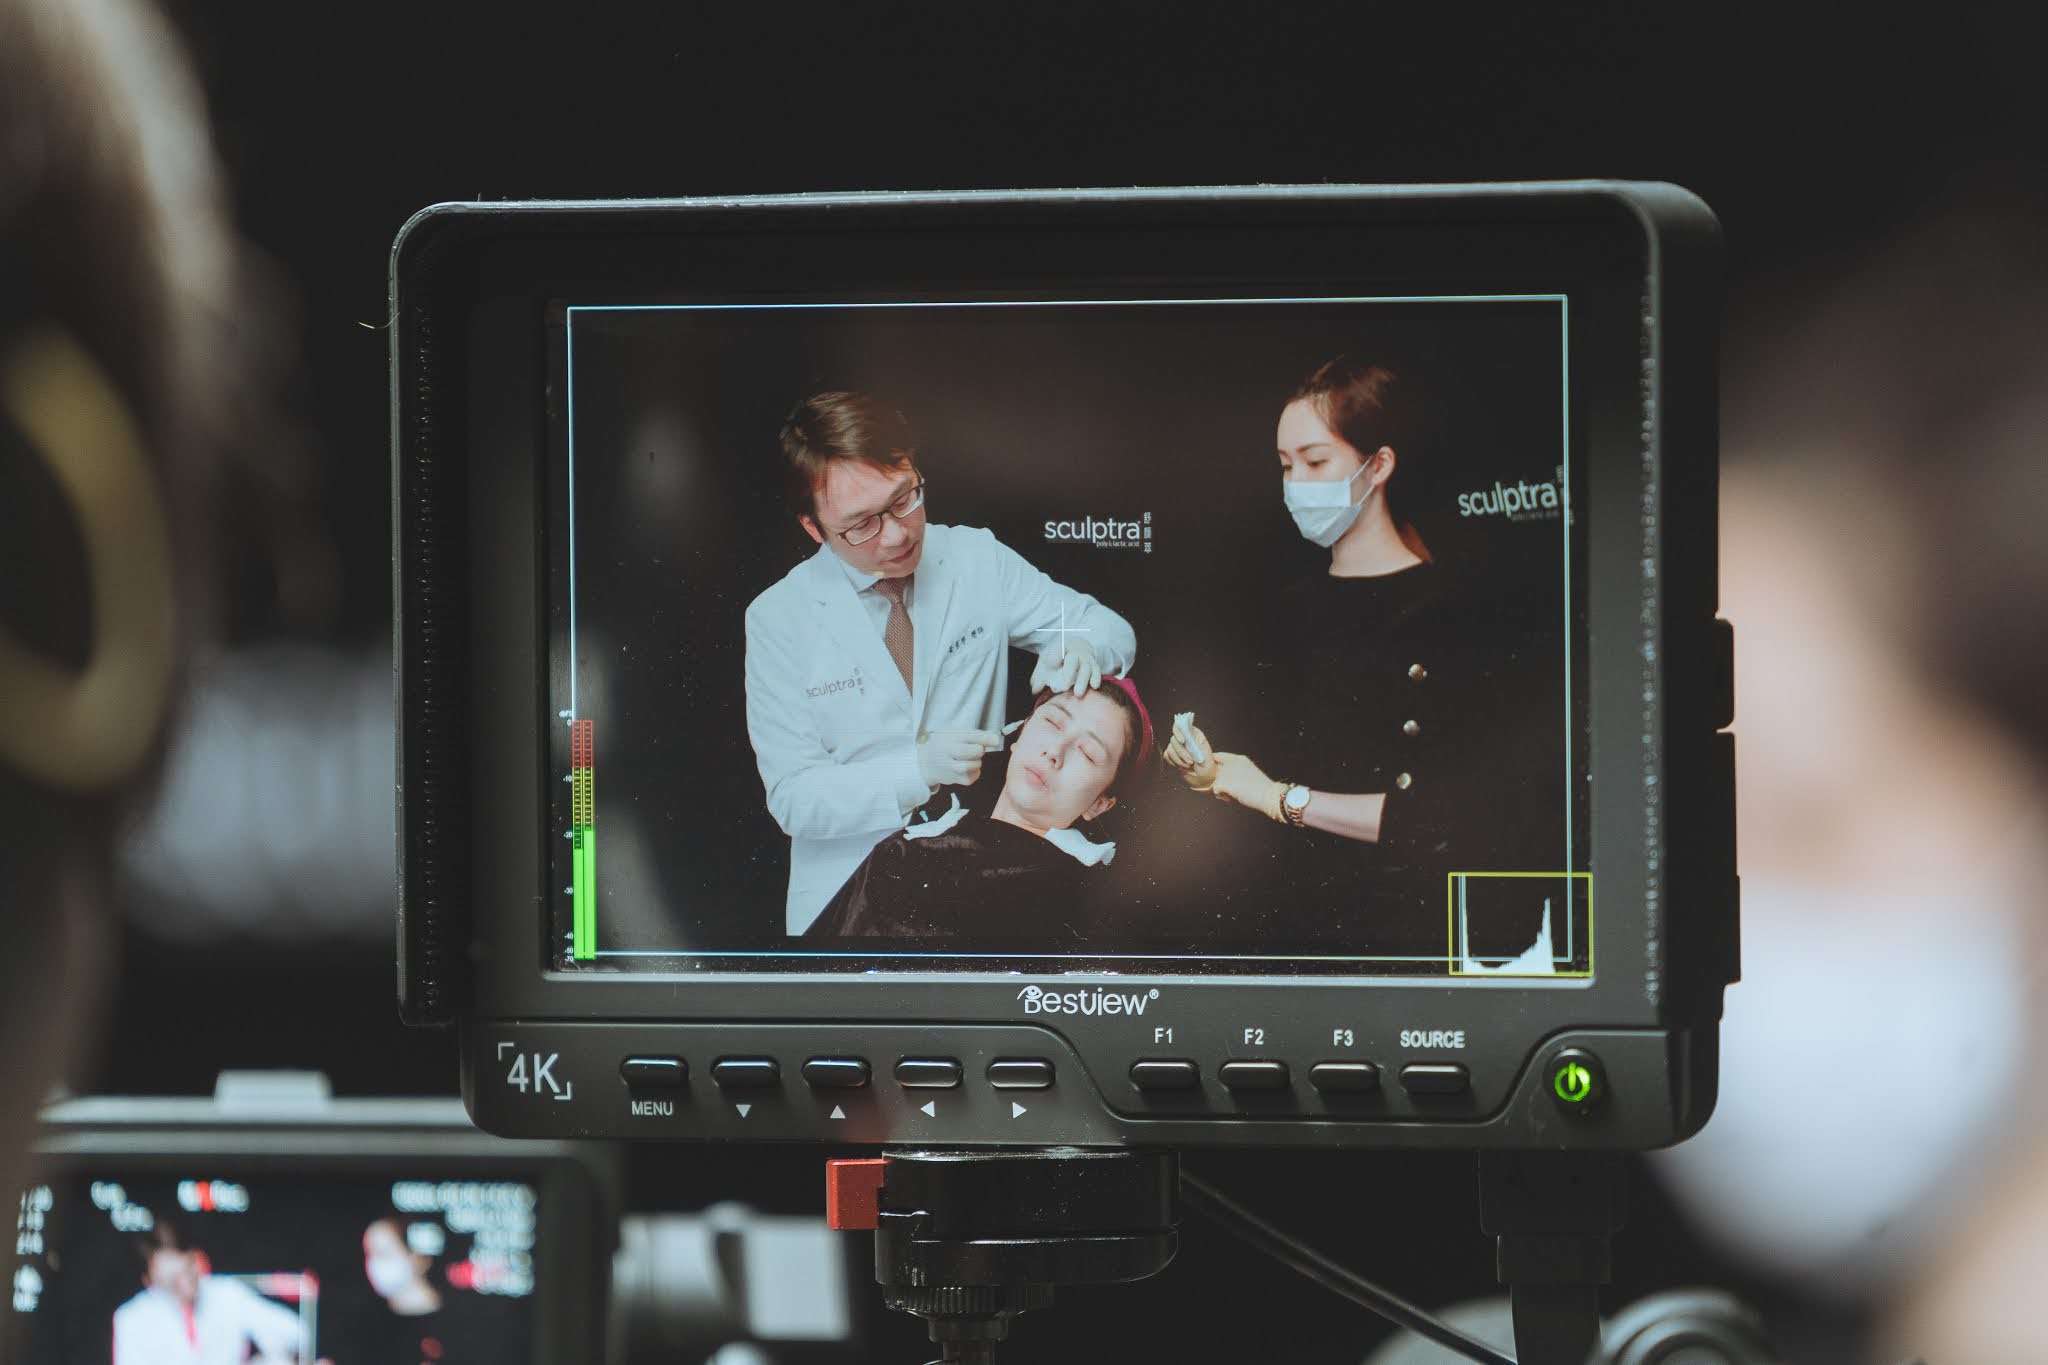 黃勇學醫師透過即時攝影轉播分享舒顏萃的注射技巧和面部年輕化的實際治療手法。